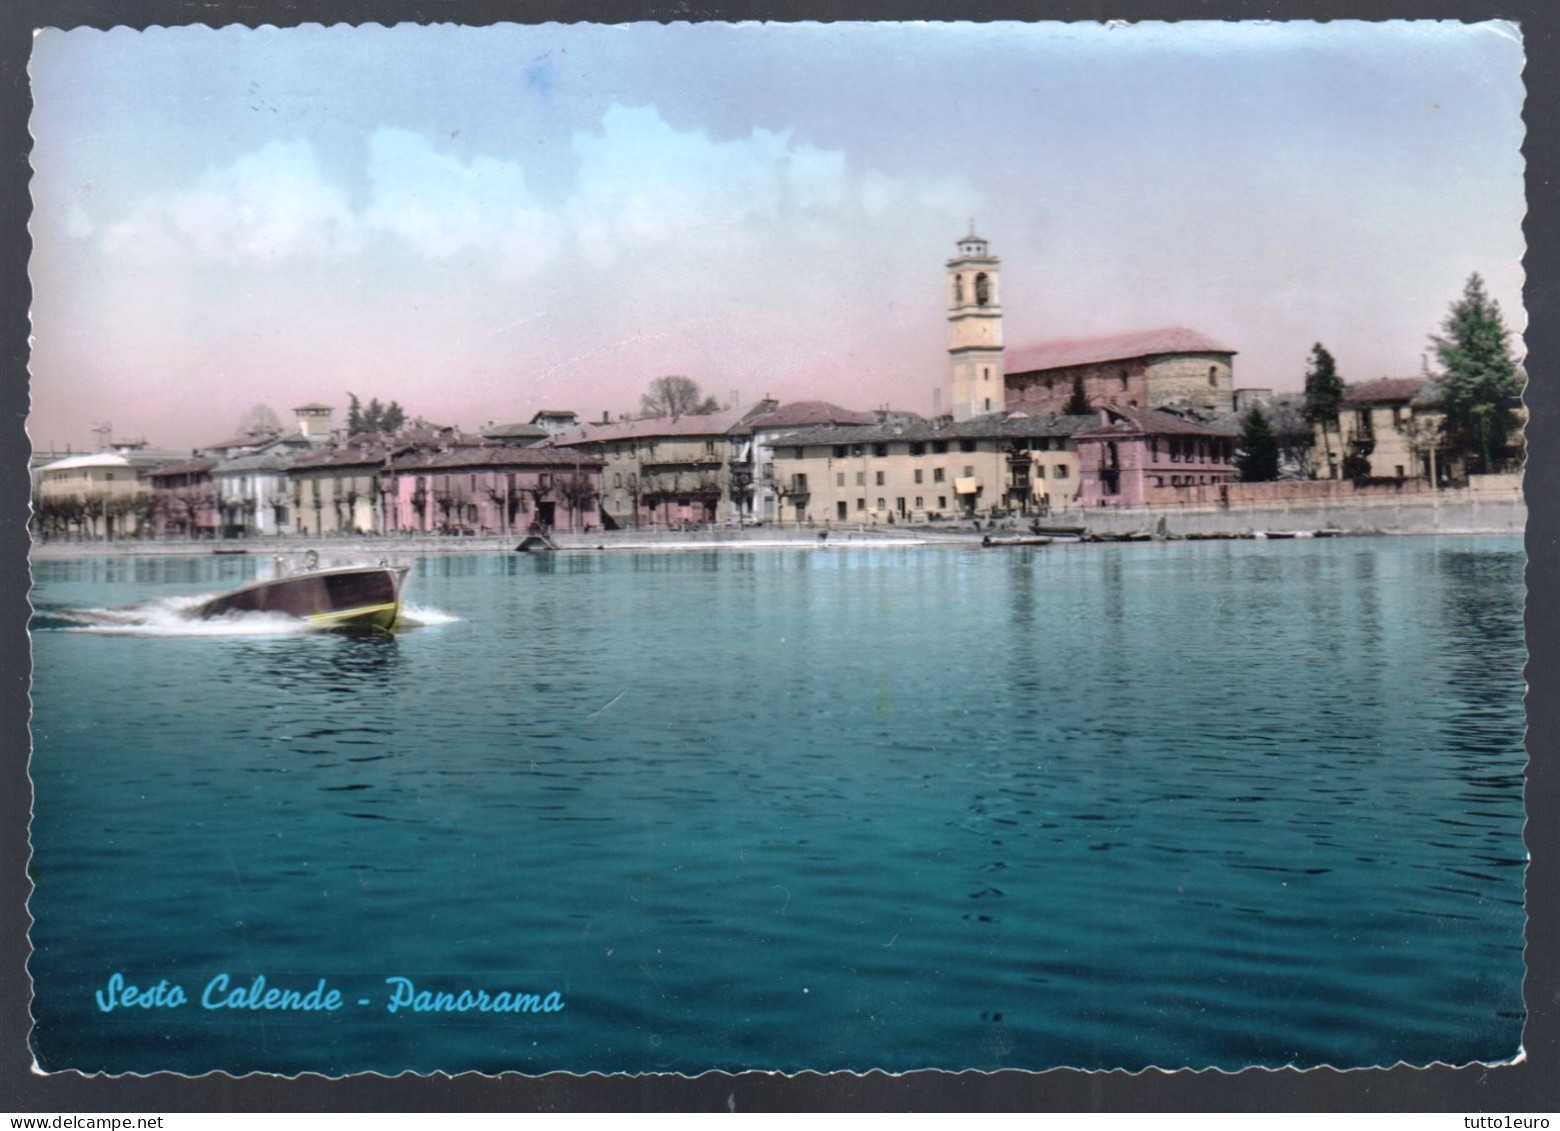 SESTO CALENDE - VARESE - 1959 -  PANORAMA CON MOTOSCAFO - Hausboote